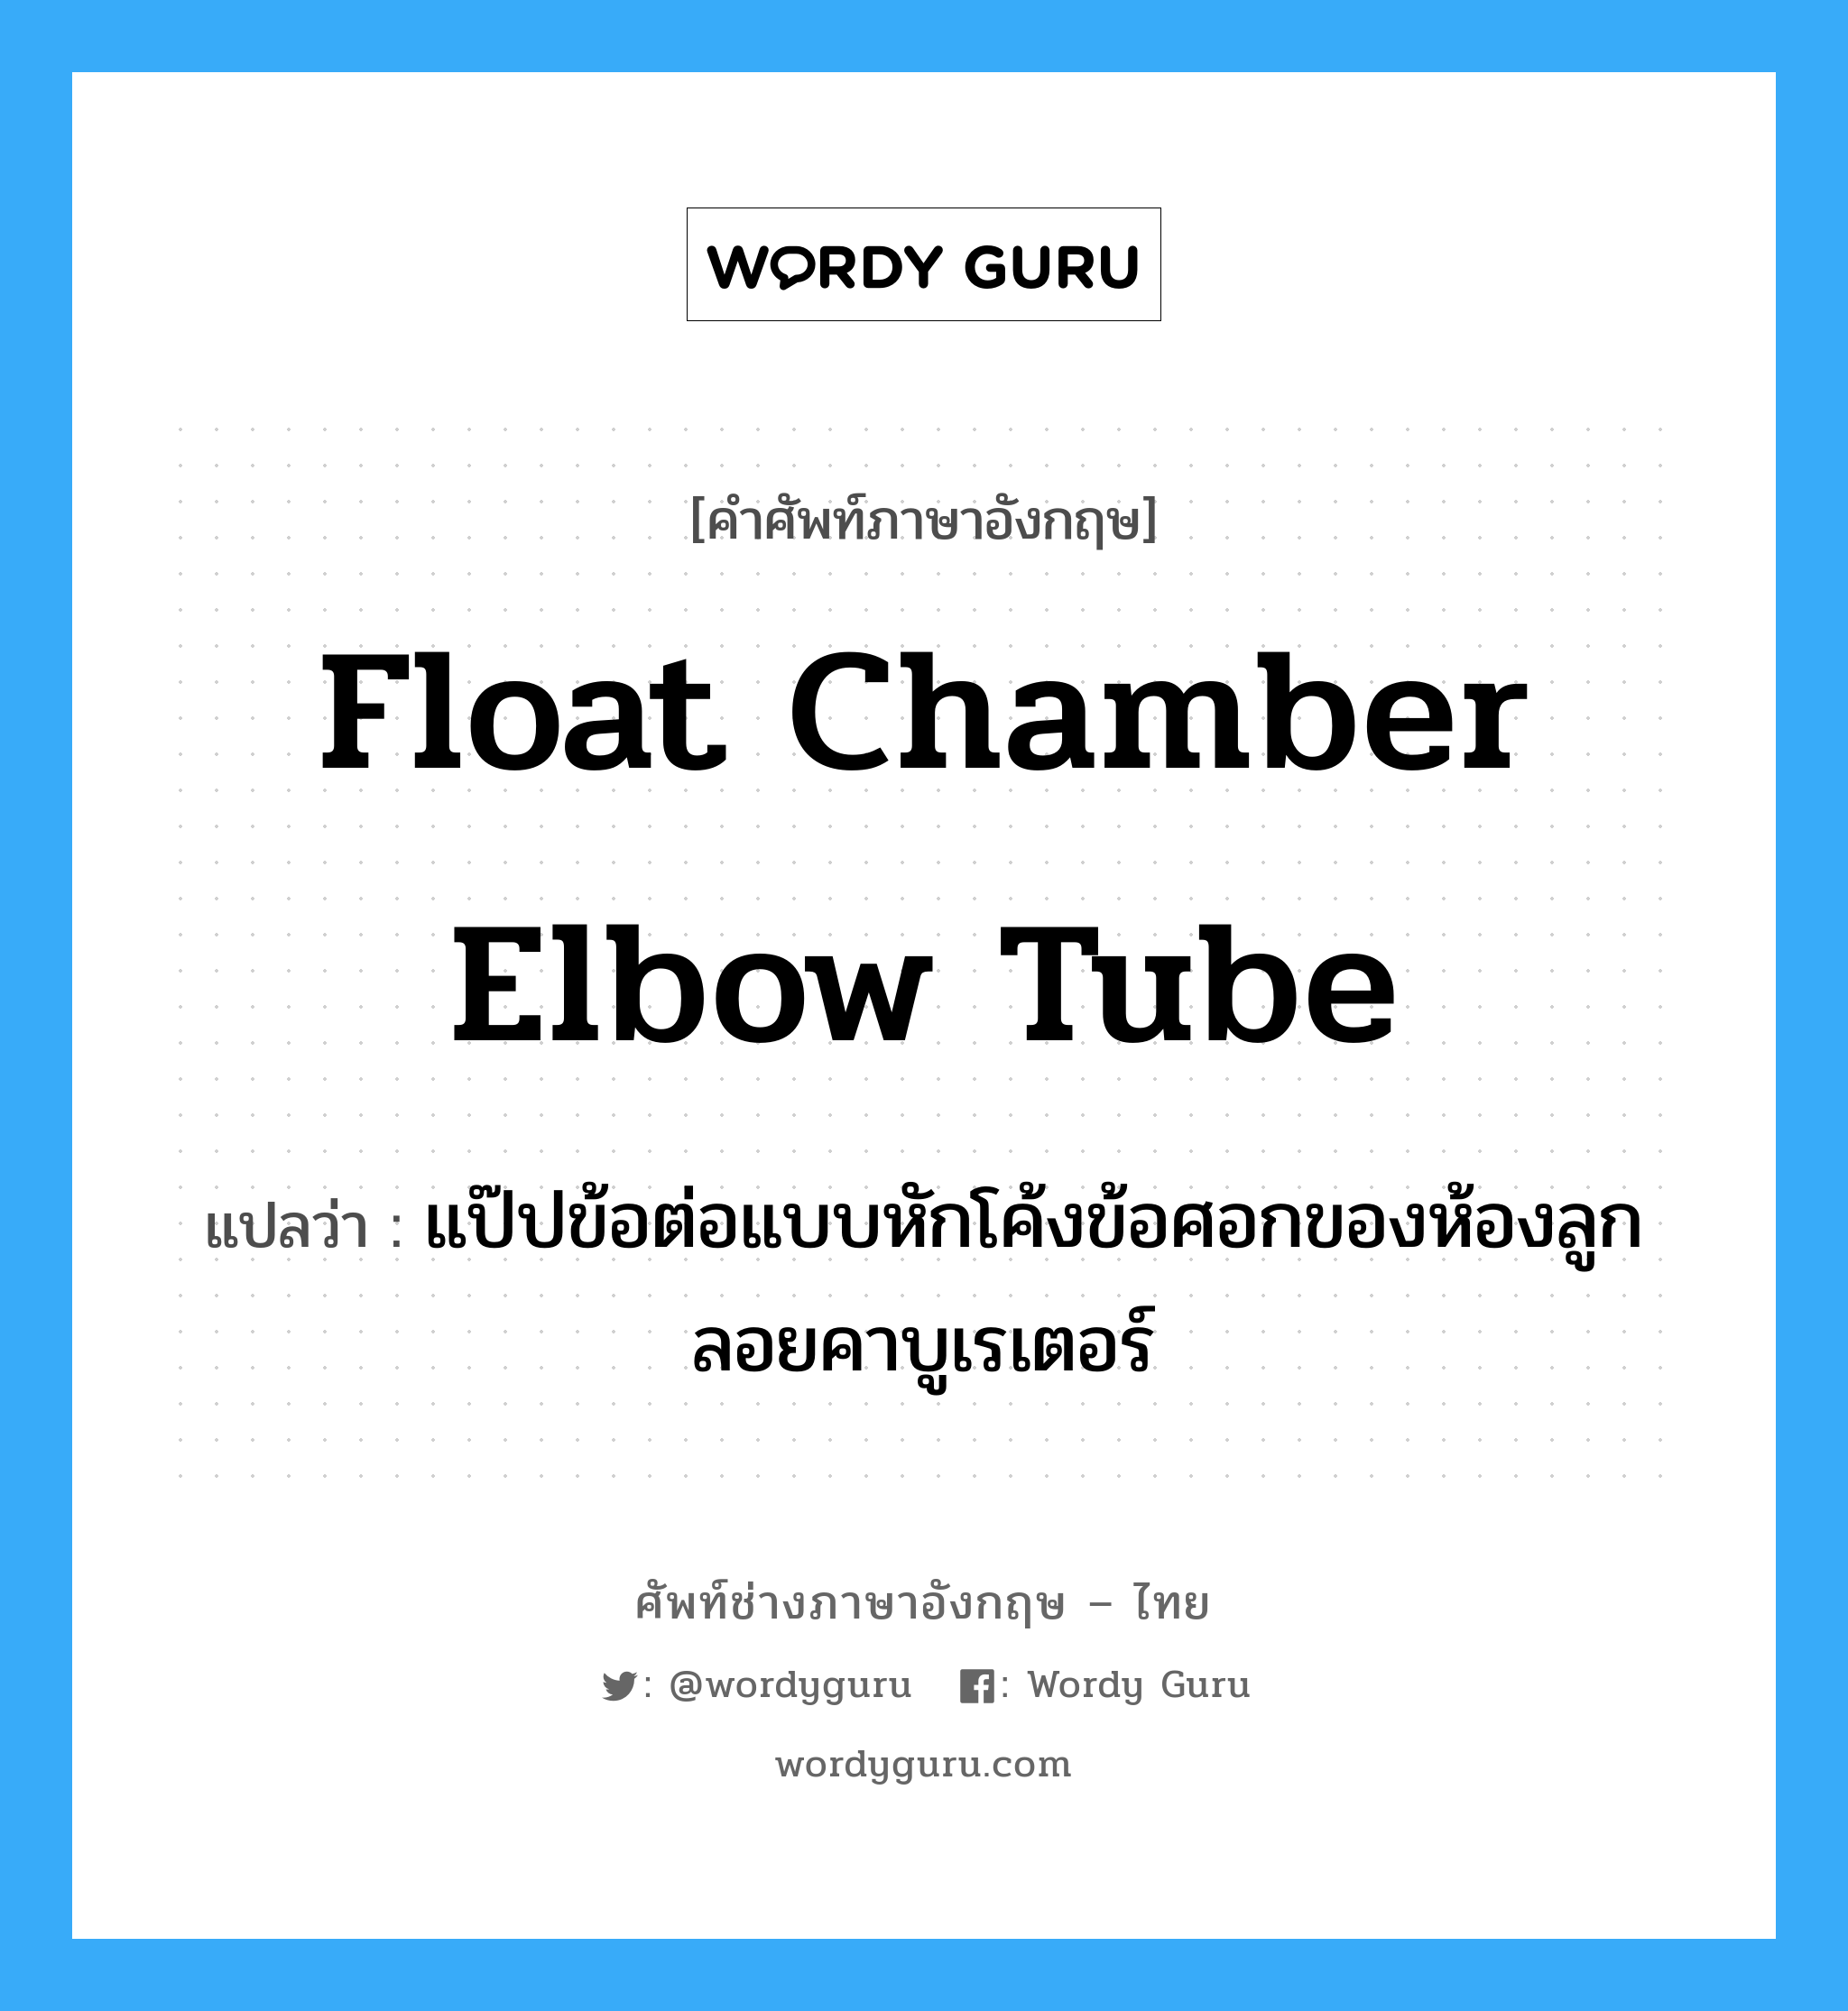 float chamber elbow tube แปลว่า?, คำศัพท์ช่างภาษาอังกฤษ - ไทย float chamber elbow tube คำศัพท์ภาษาอังกฤษ float chamber elbow tube แปลว่า แป๊ปข้อต่อแบบหักโค้งข้อศอกของห้องลูกลอยคาบูเรเตอร์